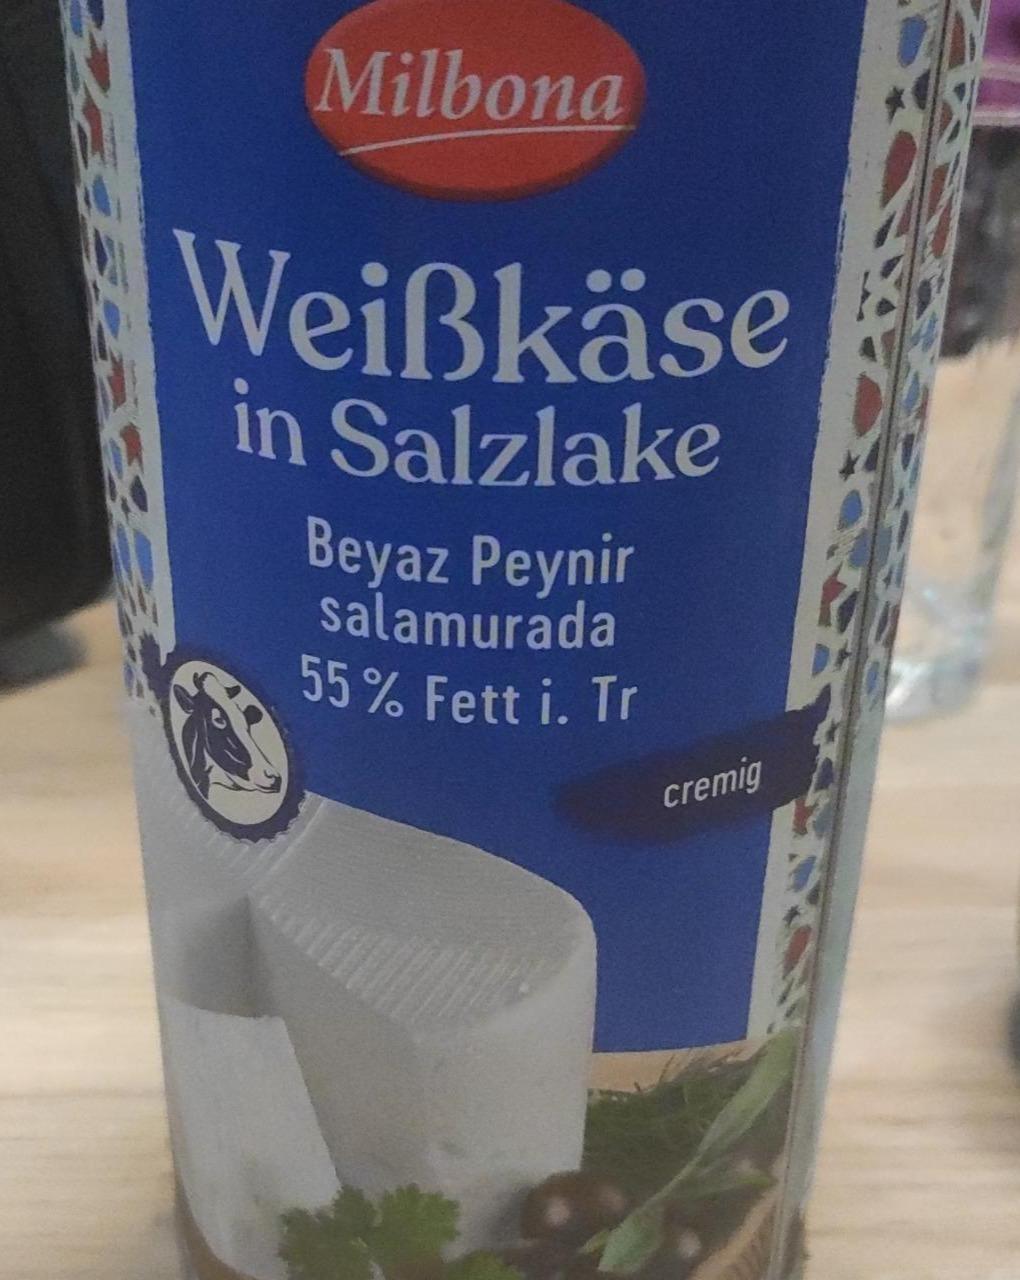 Fotografie - Weißkäse in Salzlake Milbona